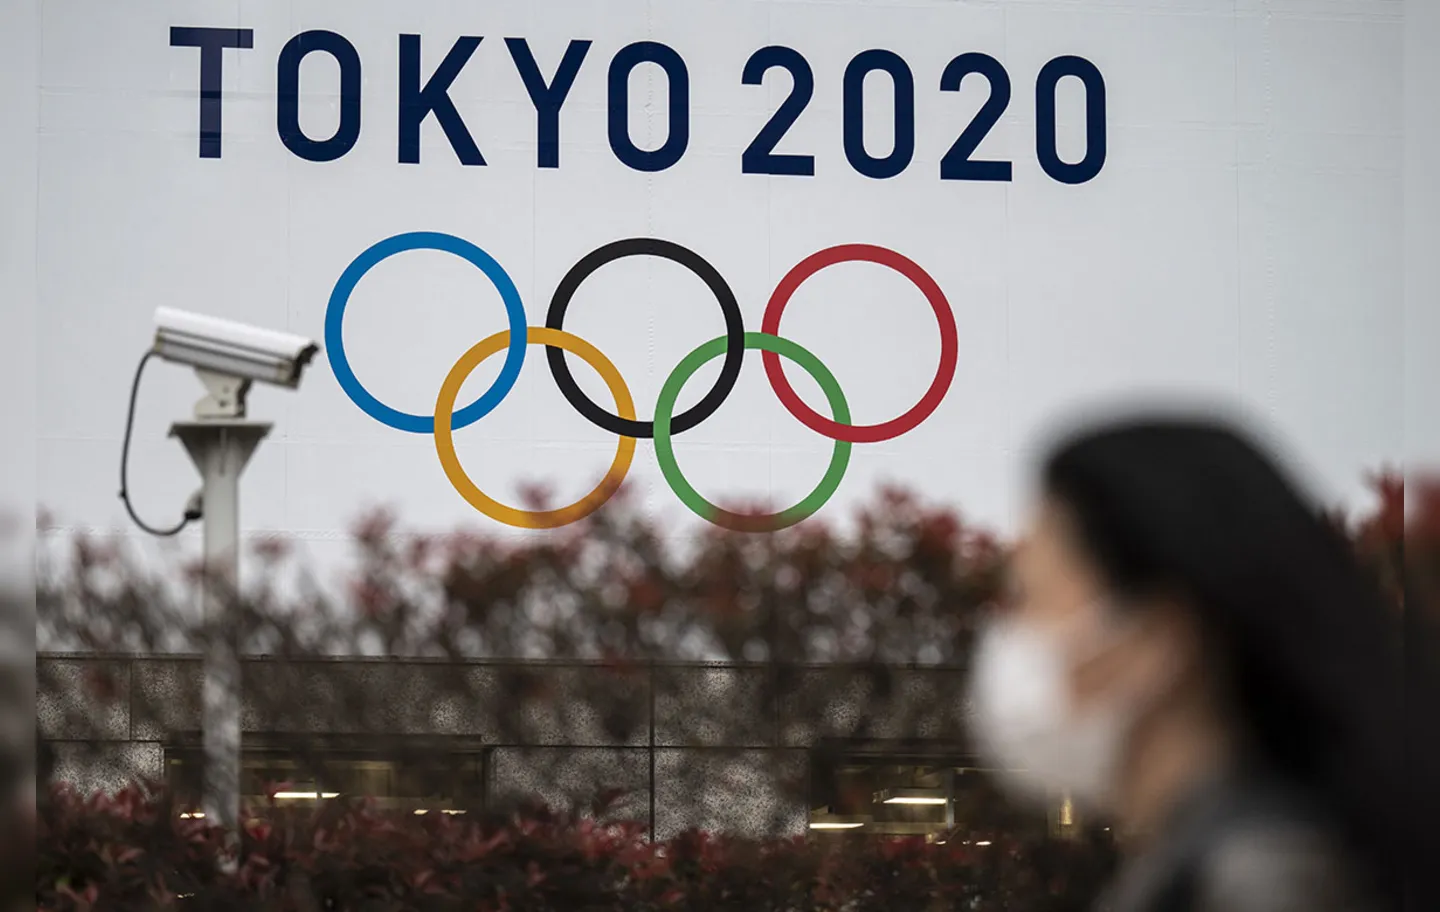 Organizadores anunciaram que torcida poderá acompanhar os Jogos | Foto: AFP